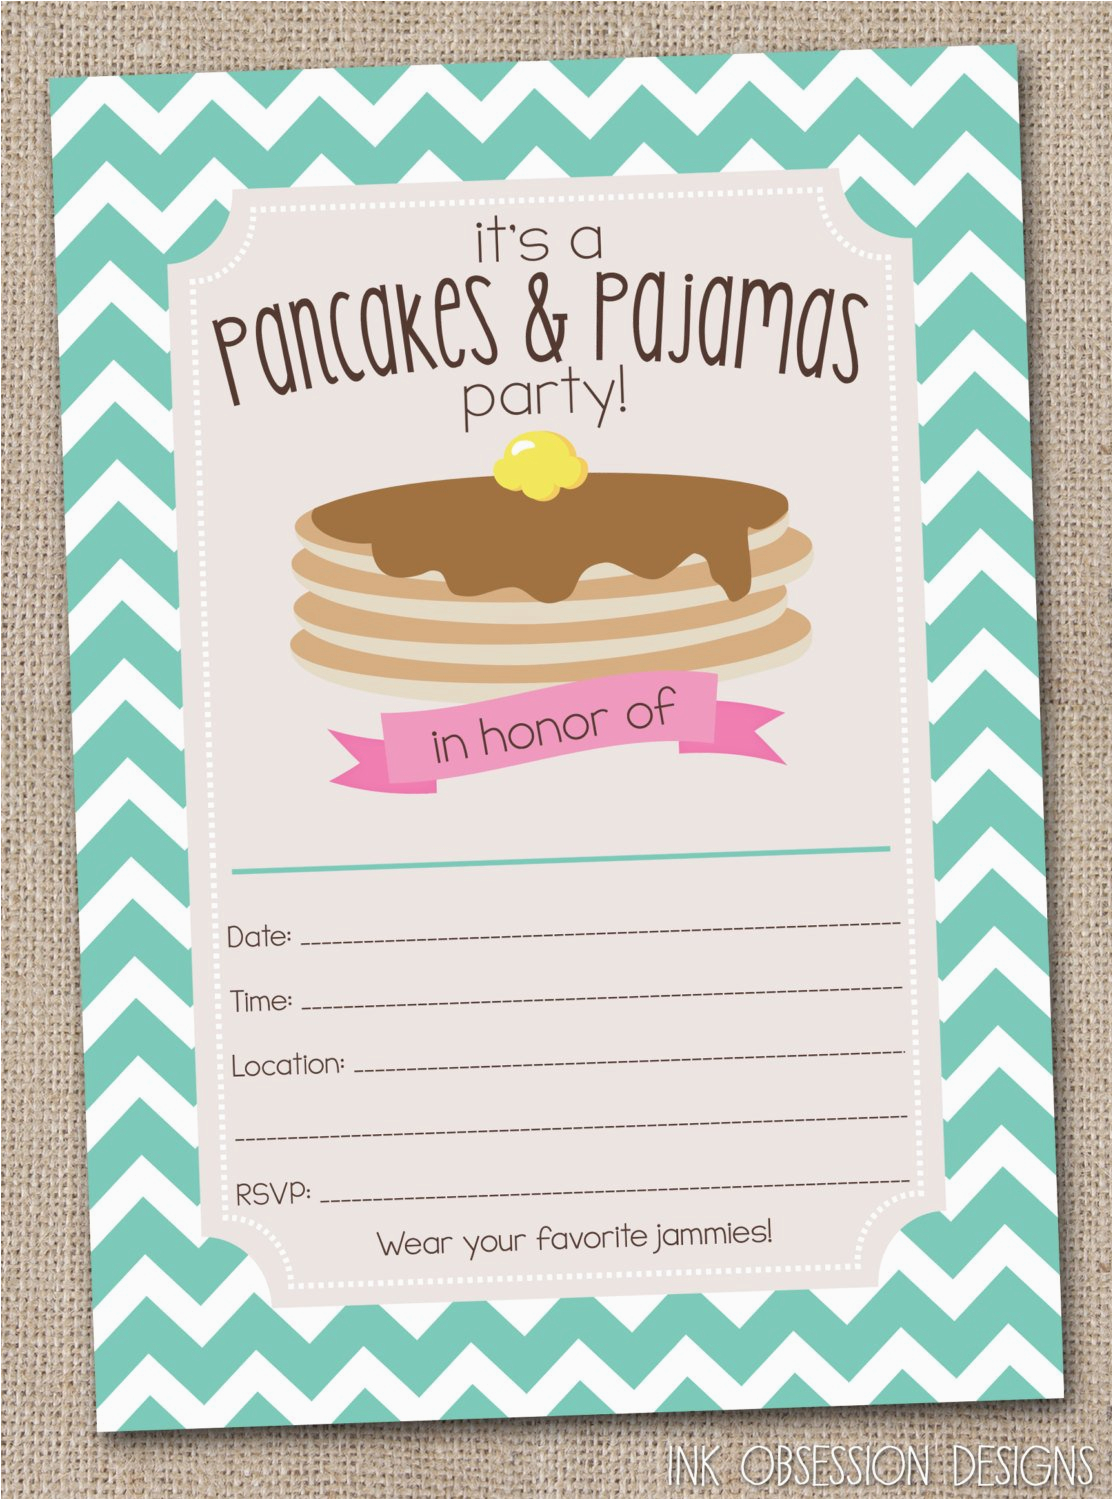 pancakes pajamas party invitations